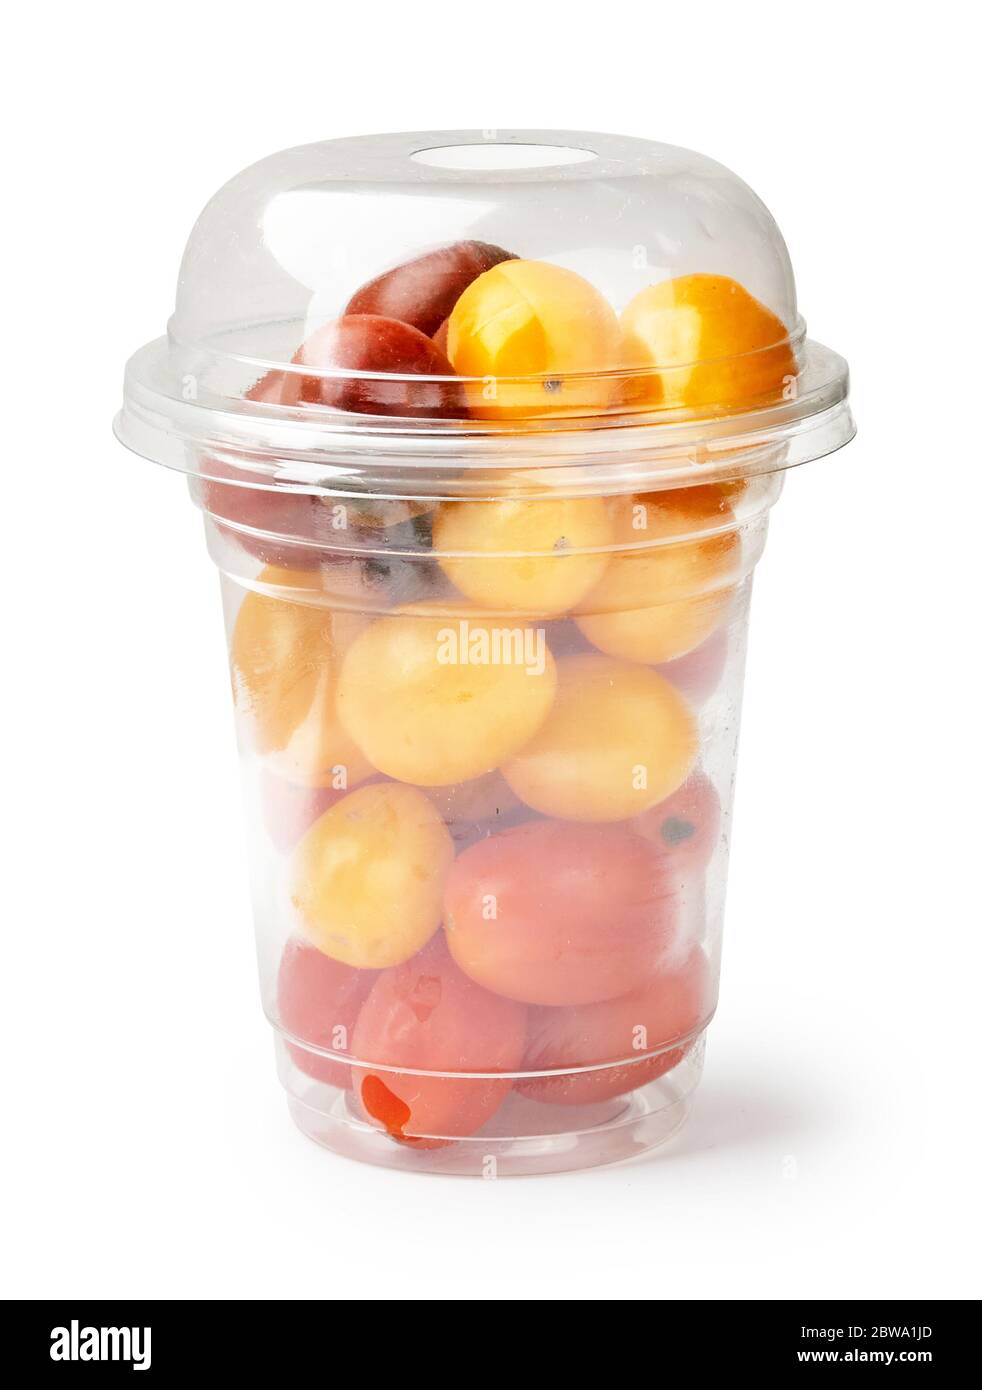 Pomodori rossi ciliegini e pomodori gialli in confezione di plastica su fondo bianco. Foto Stock